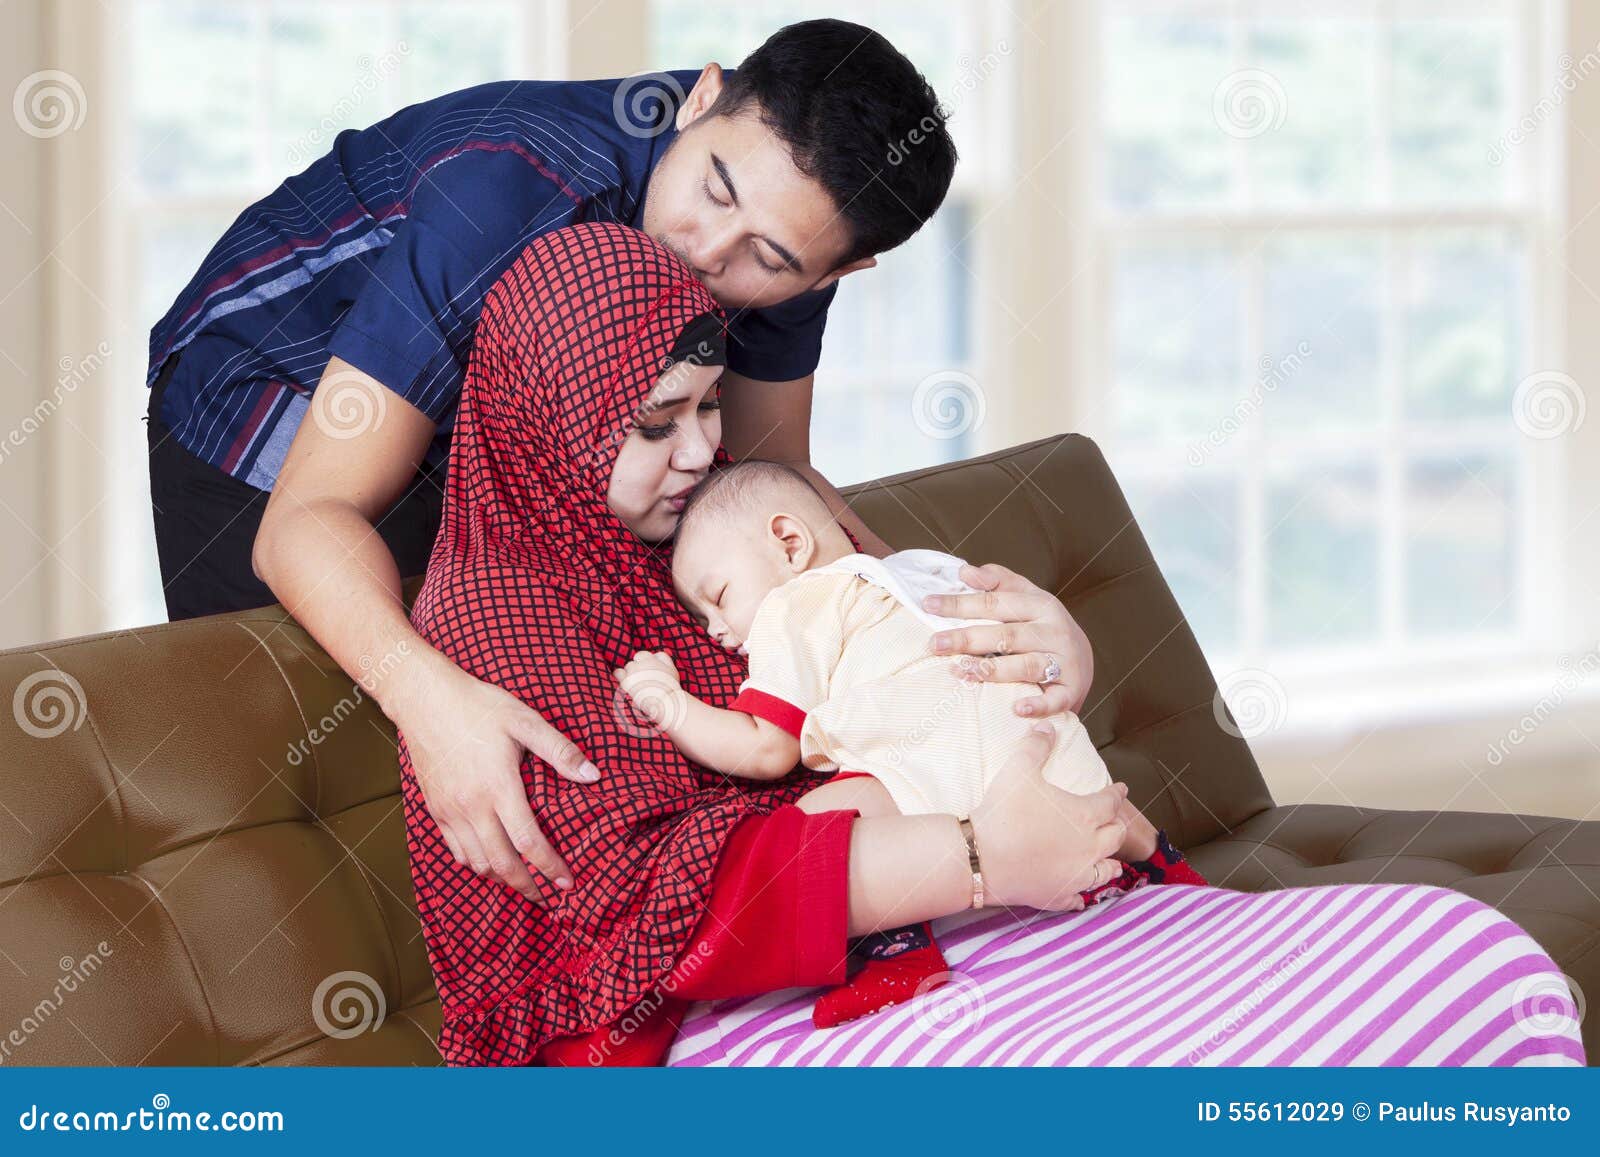 Happy Parents with Baby Boy Stock Image - Image of motherhood, islam:  55612029